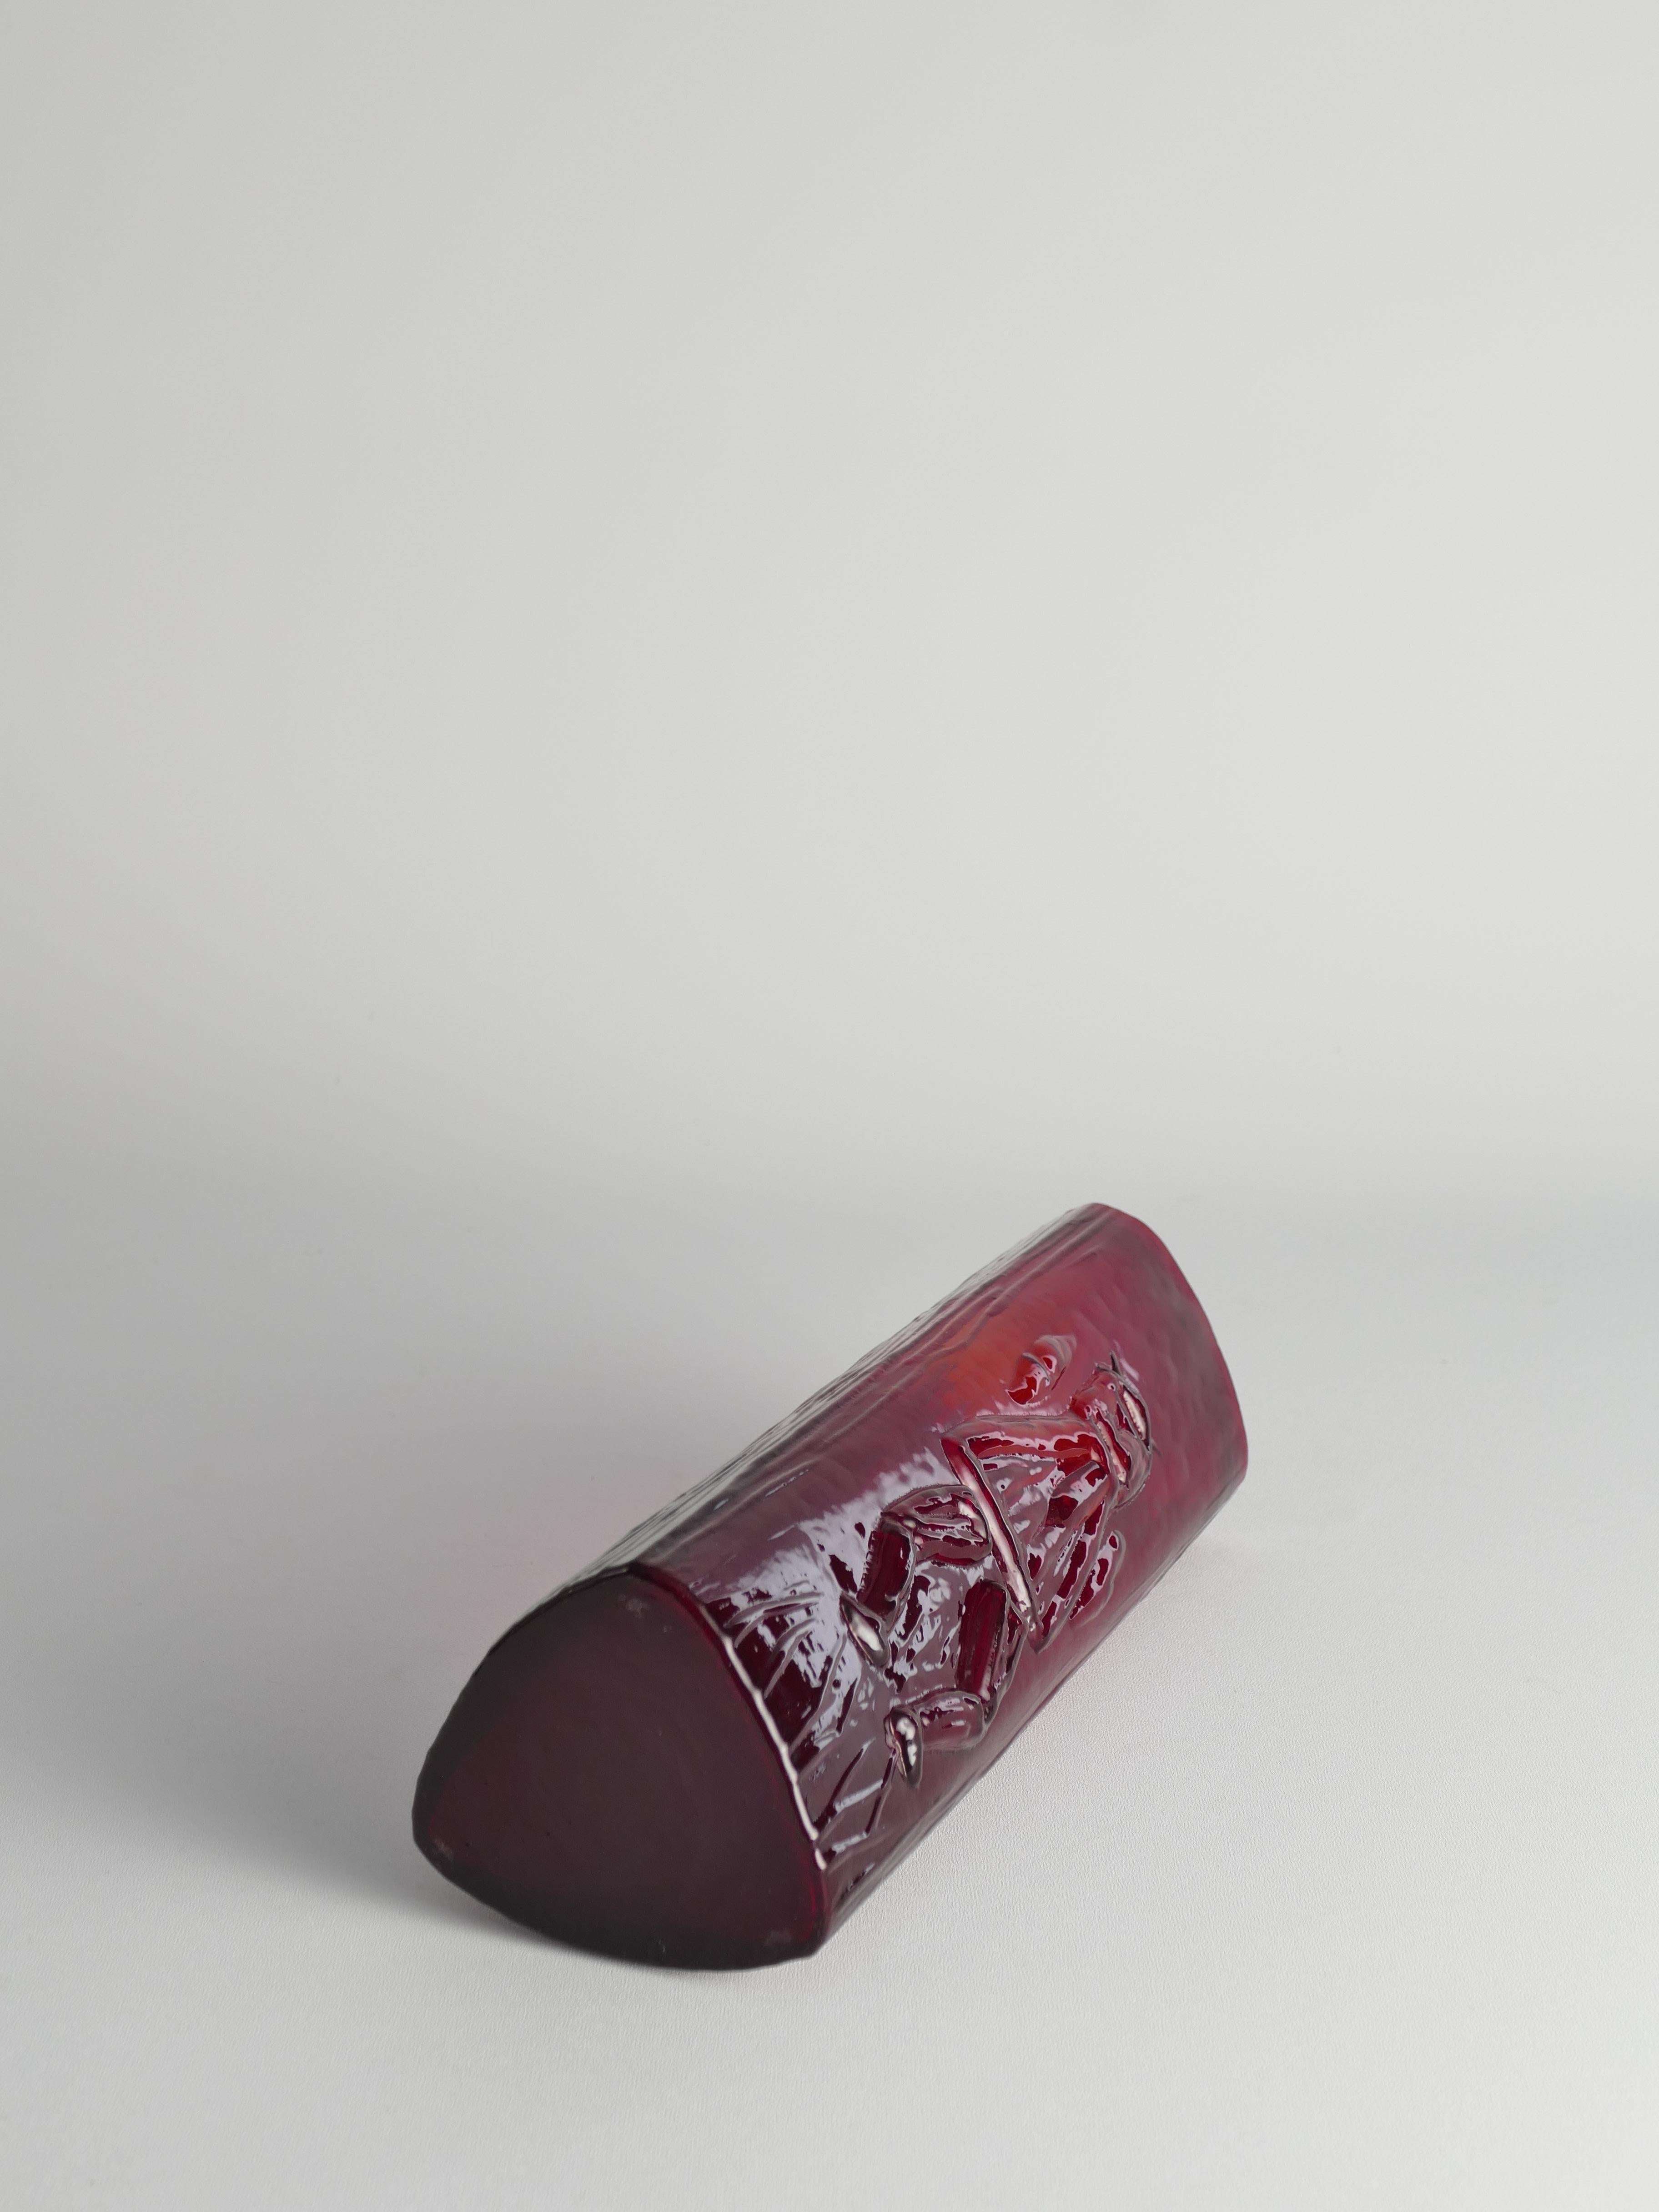 Swedish Red Devil Triangular Glass Vase by Christer Sjögren for Lindshammar For Sale 2